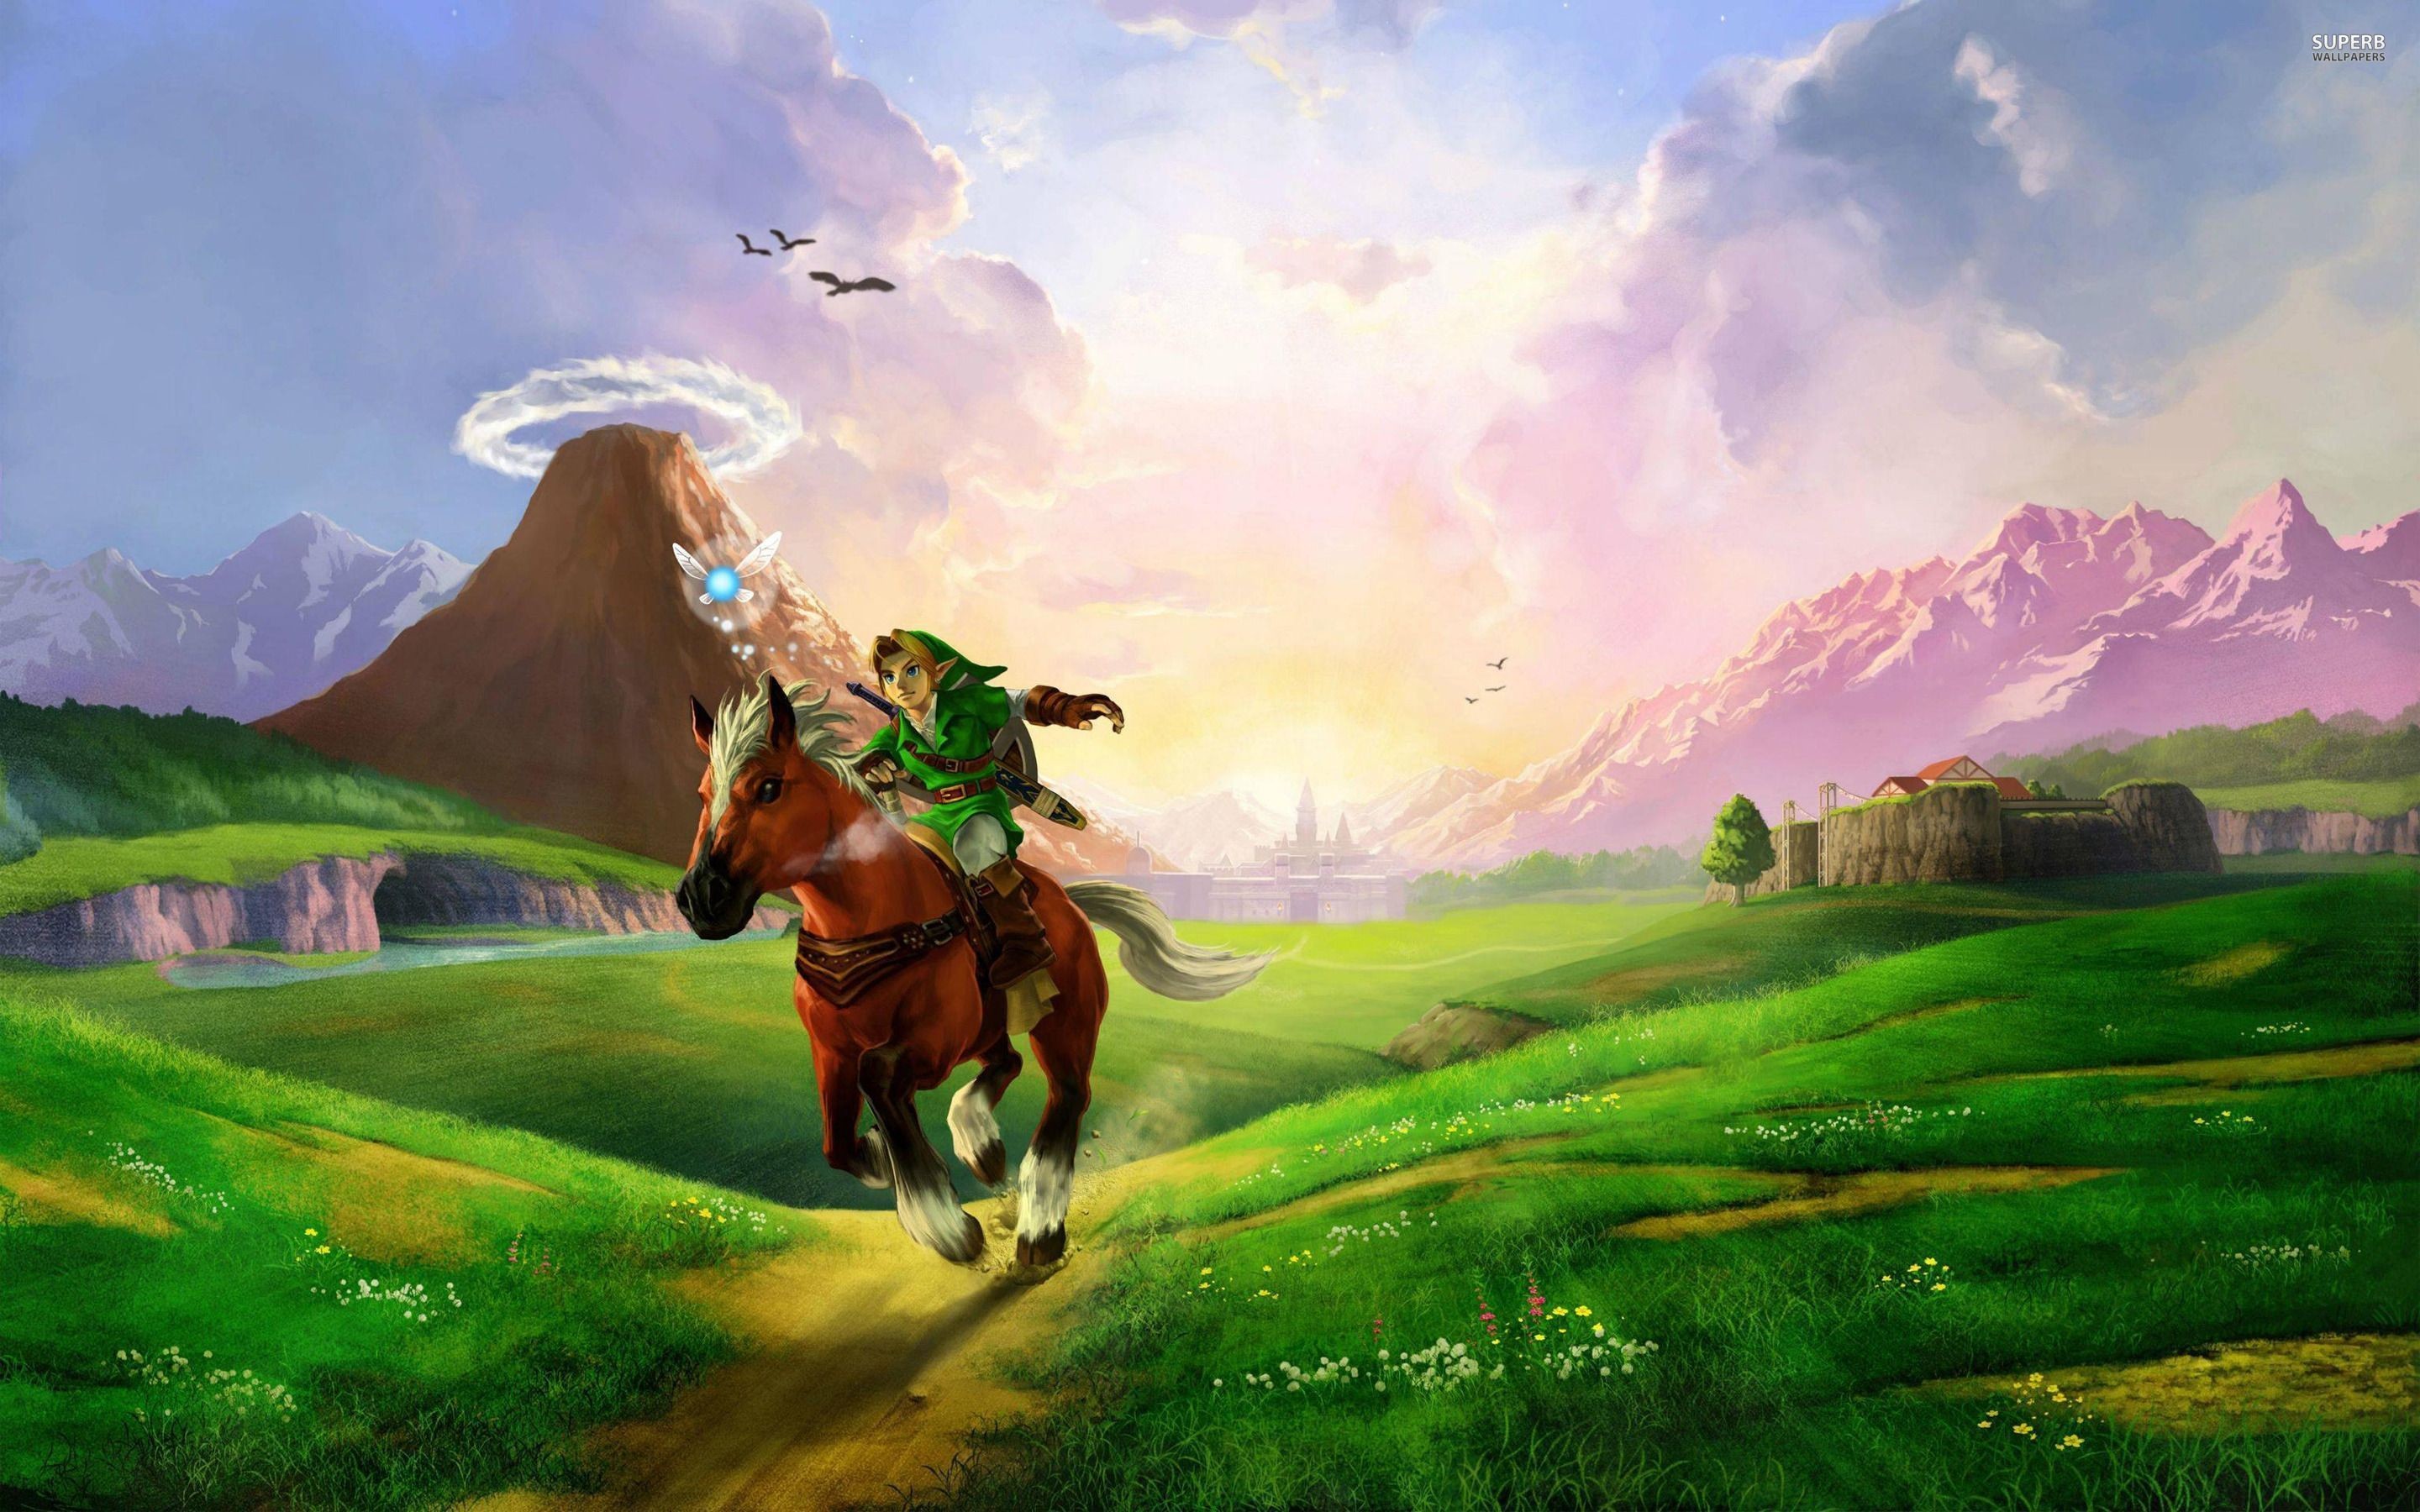 2880x1800 Link and Zelda - The Legend of Zelda wallpaper - Game wallpapers .